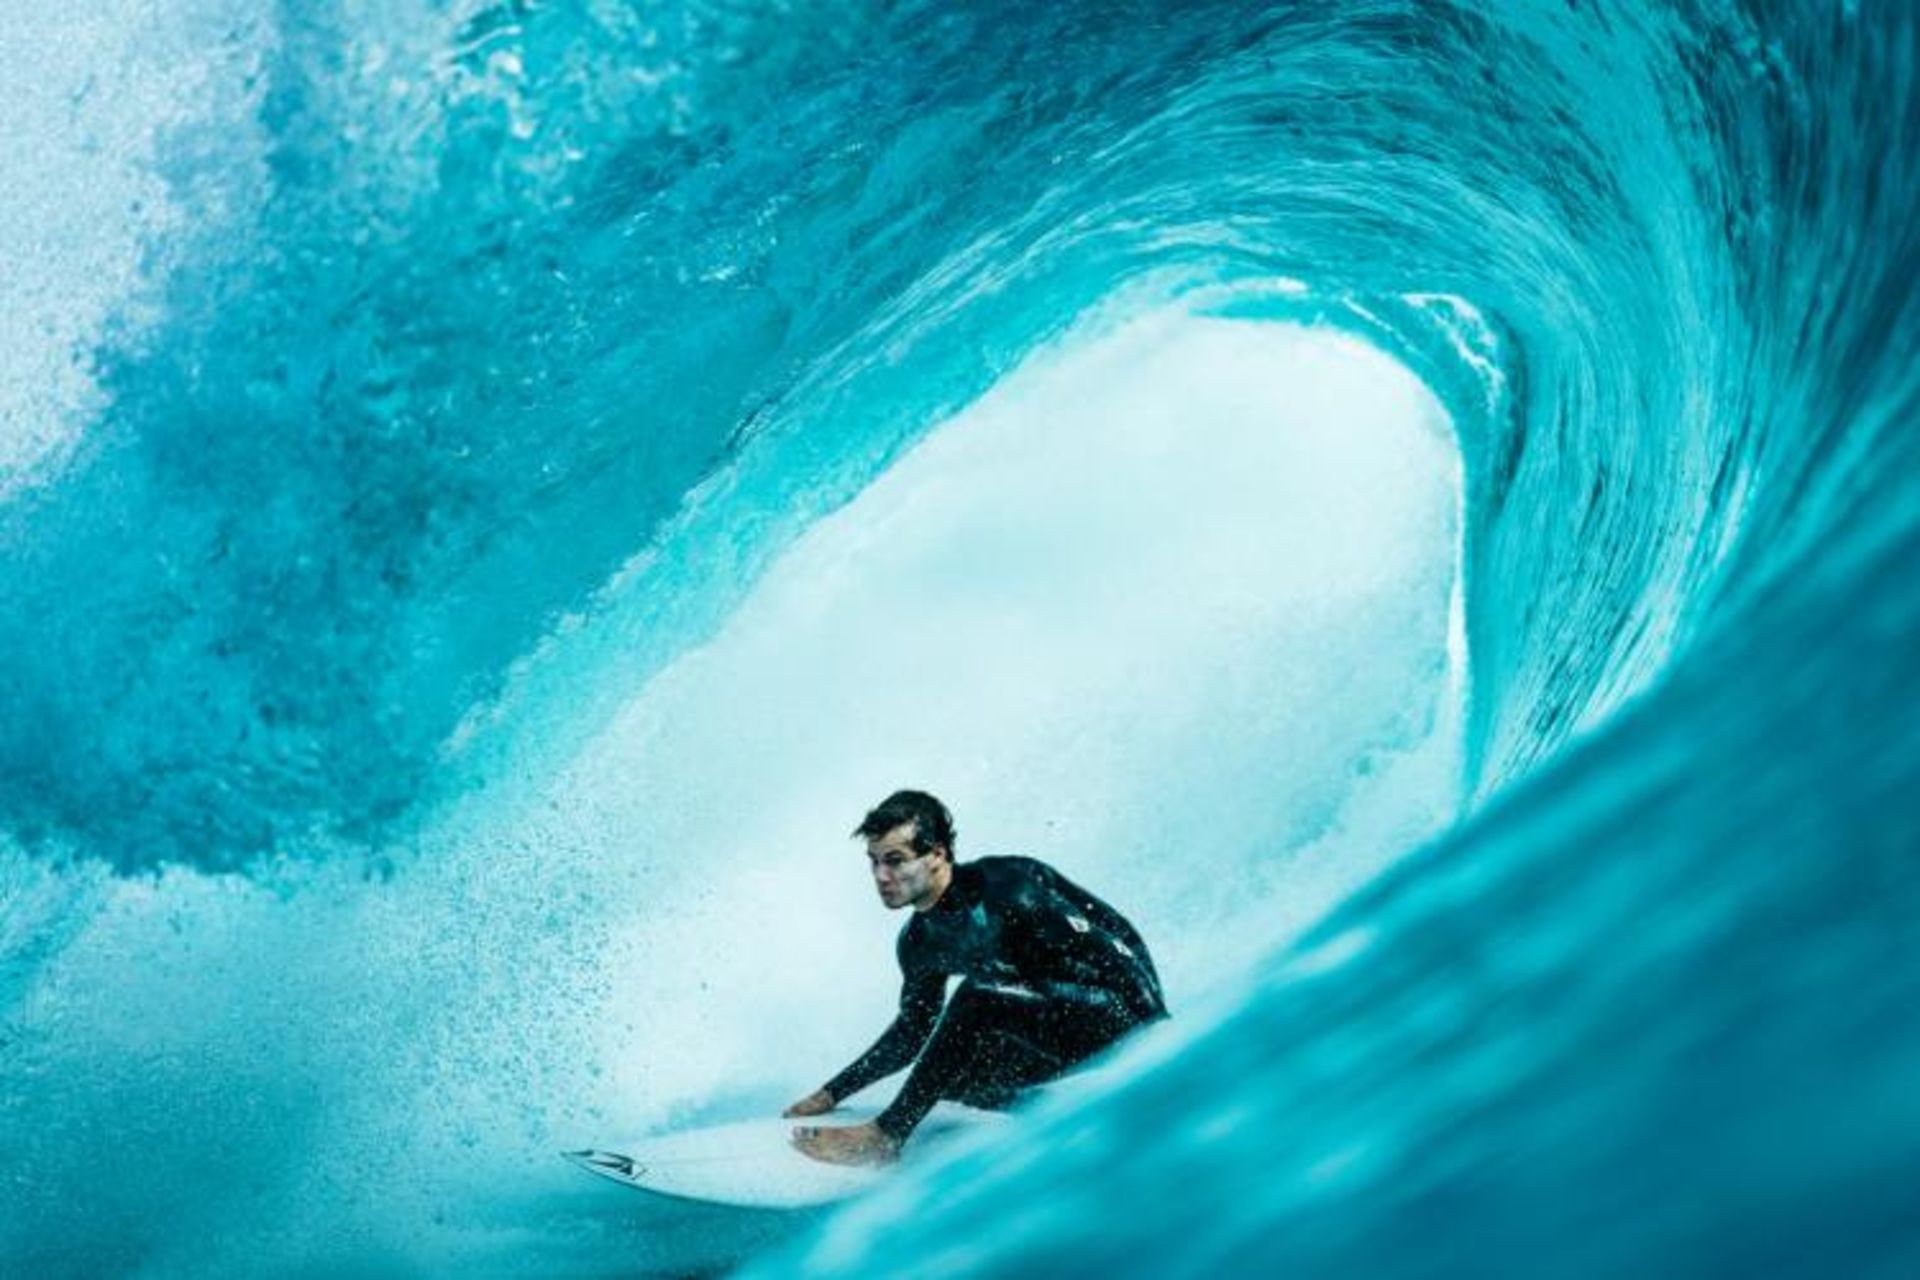 مرجع متخصصين ايران فيناليست تام پيرسال در مسابقه عكاسي 2020 Surf Photo Nikon Australia